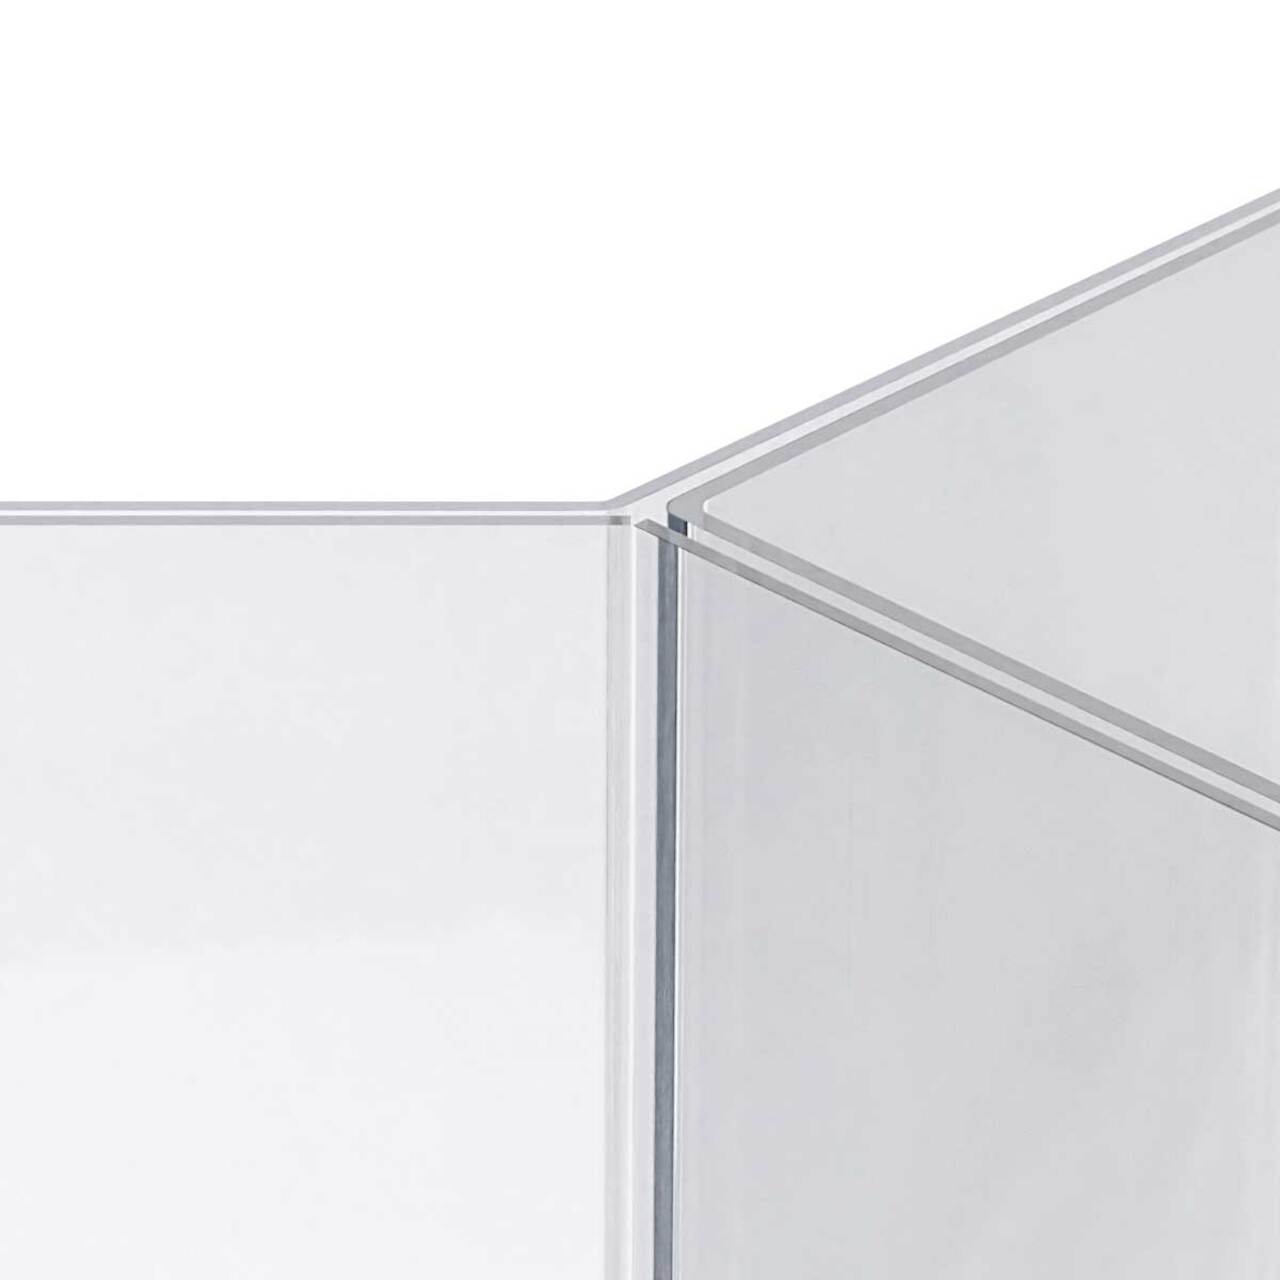 Table Tent Inserts A5, JJ DISPLAYS, 148 x 210 mm, Portrait